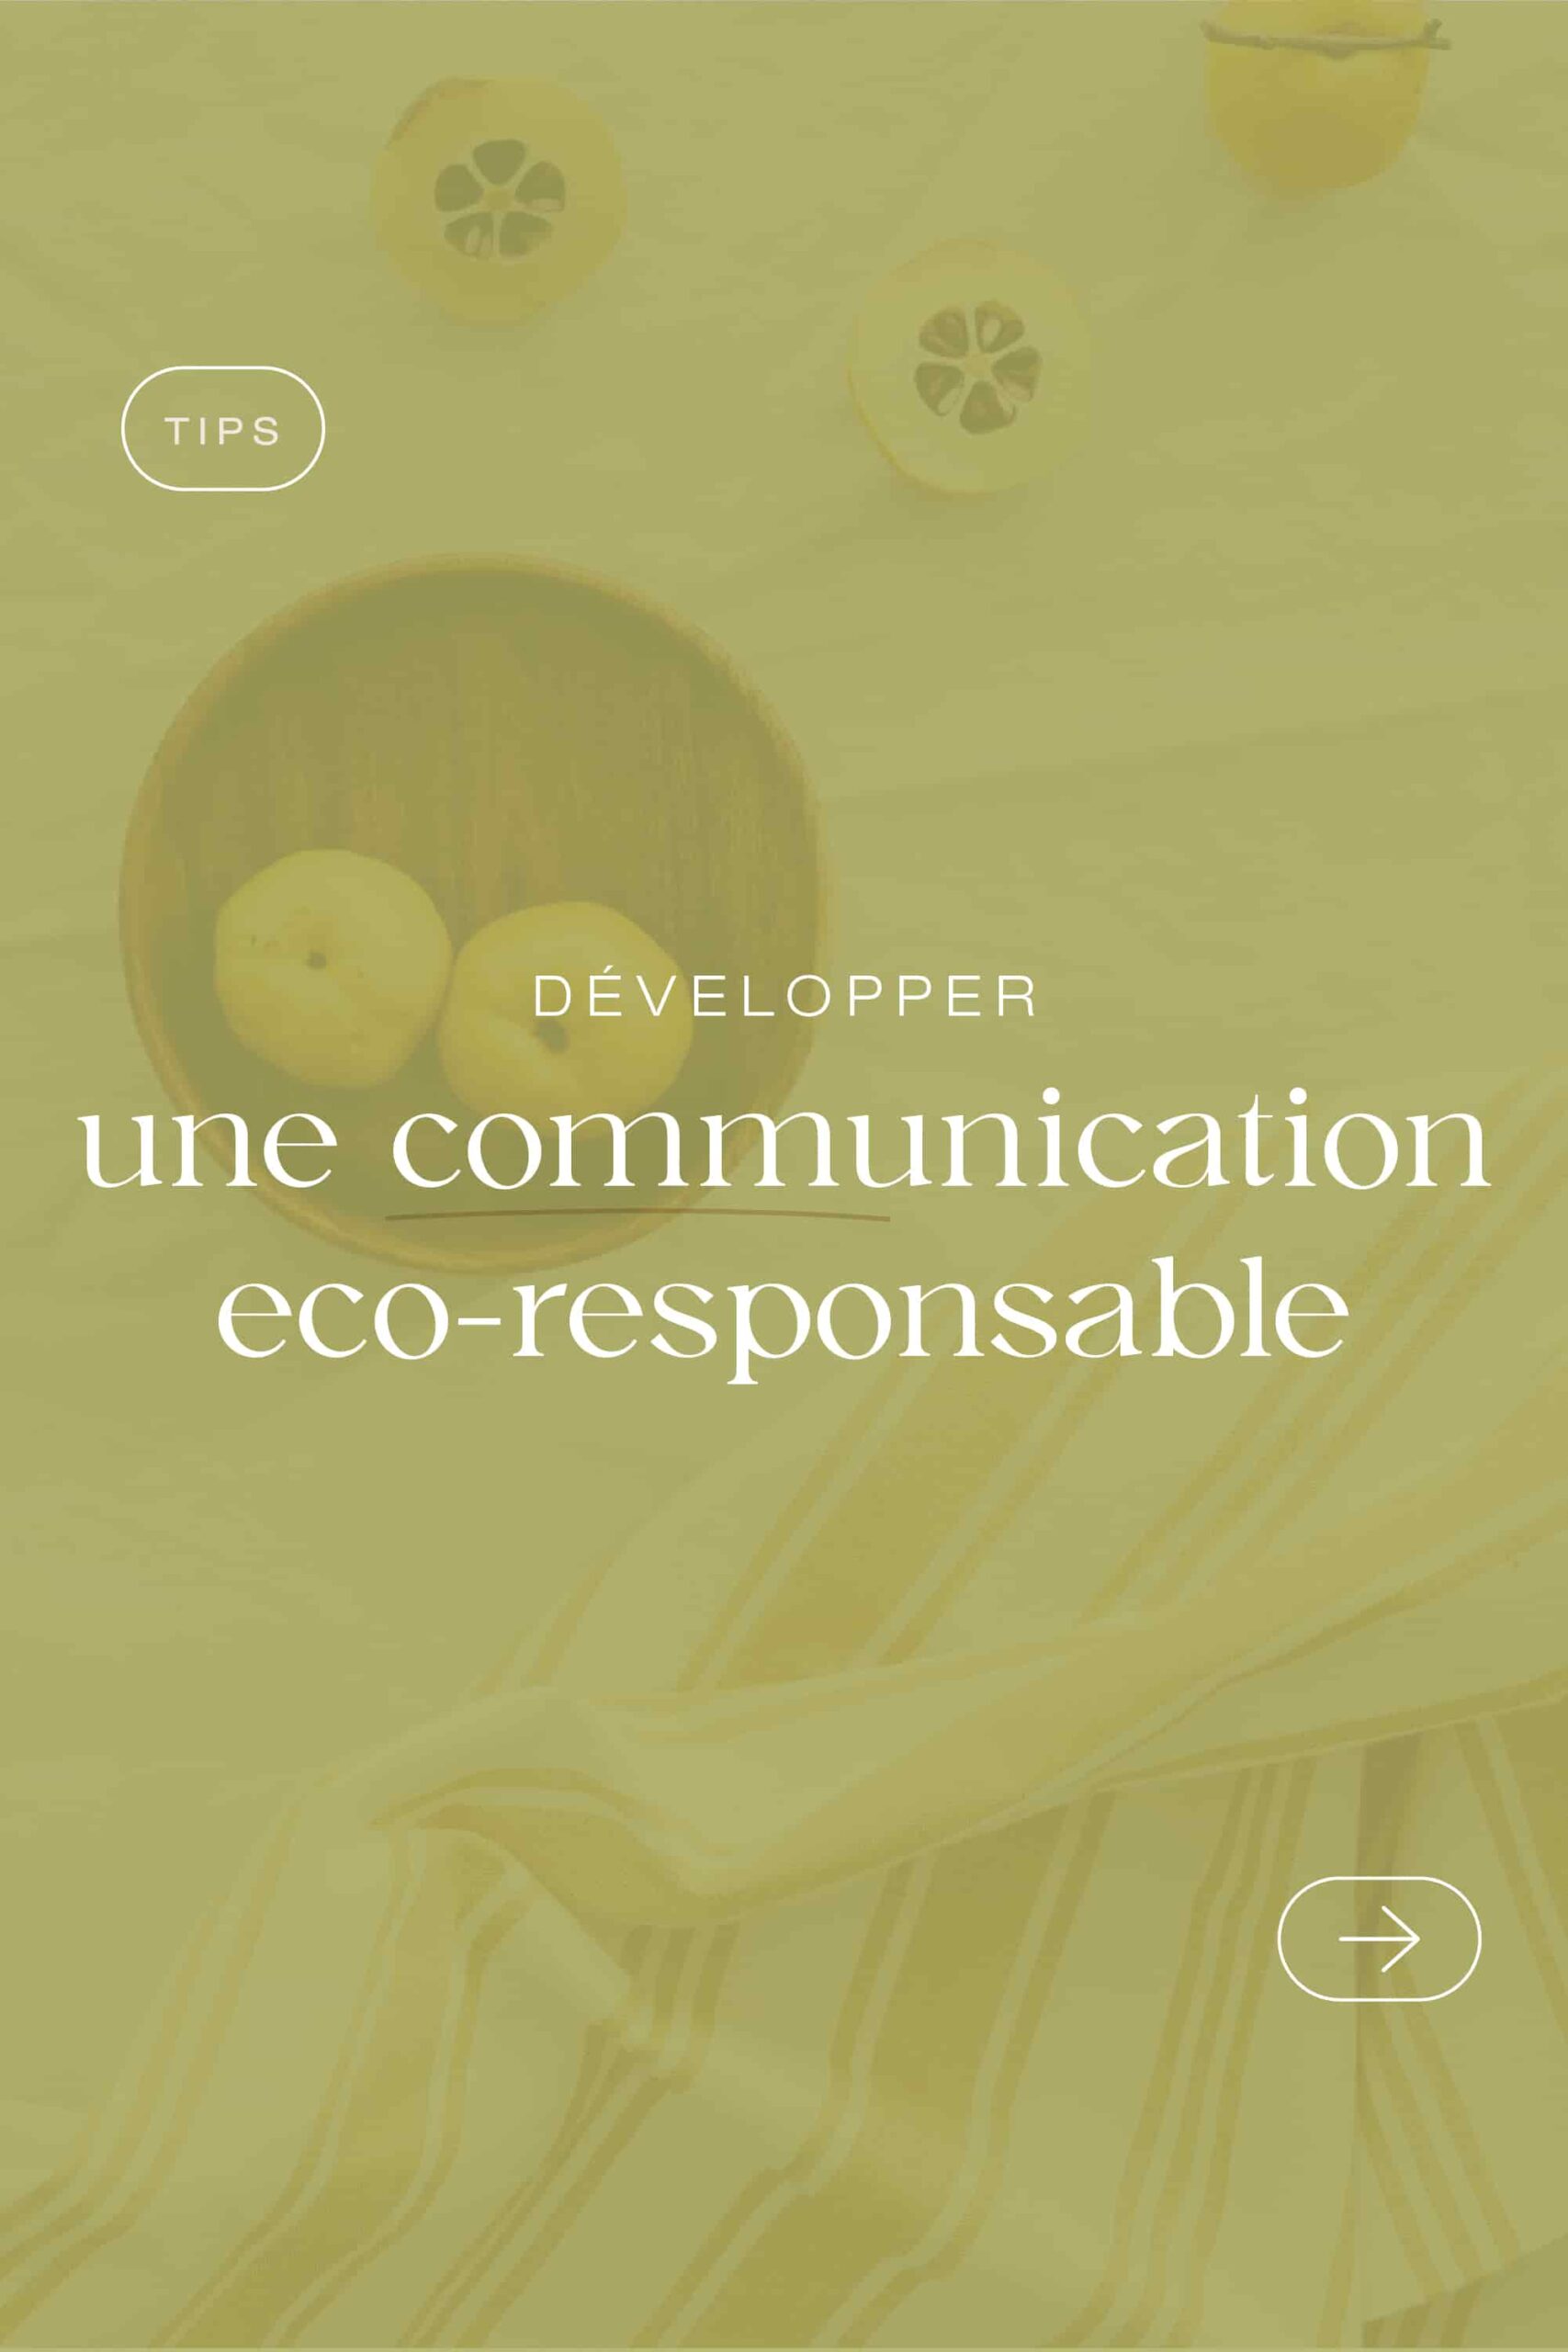 Image d'article de blog parlant de développer une communication éco-responsable pour son entreprise